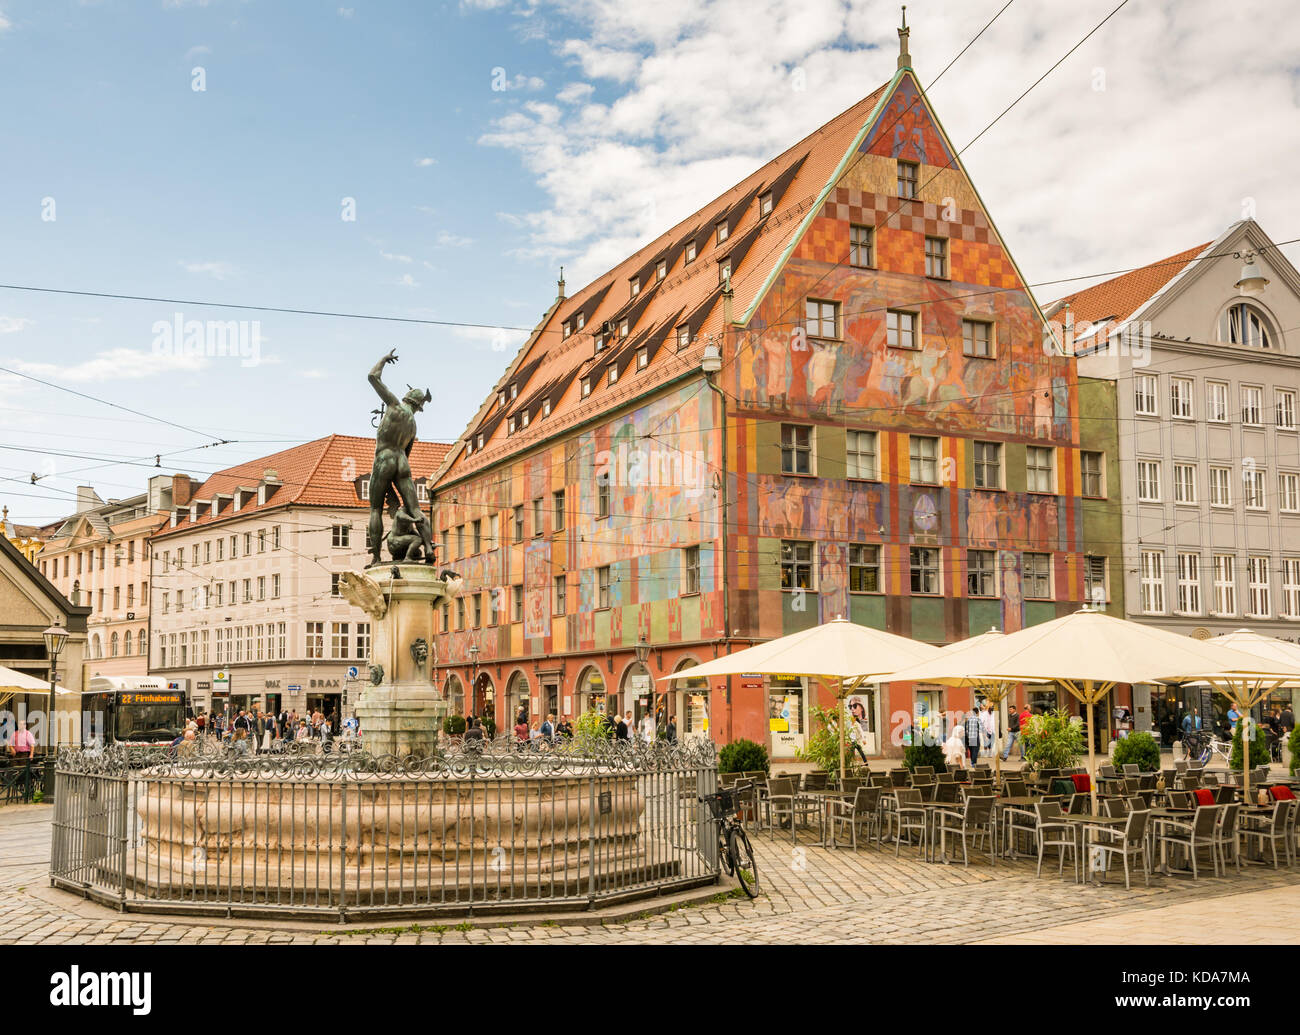 Augsburg, Germania - 19 agosto: città vecchia con merkur fontana e casa weberhaus ad Augsburg, in Germania il 19 agosto 2017. Augsburg è uno dei oldes Foto Stock